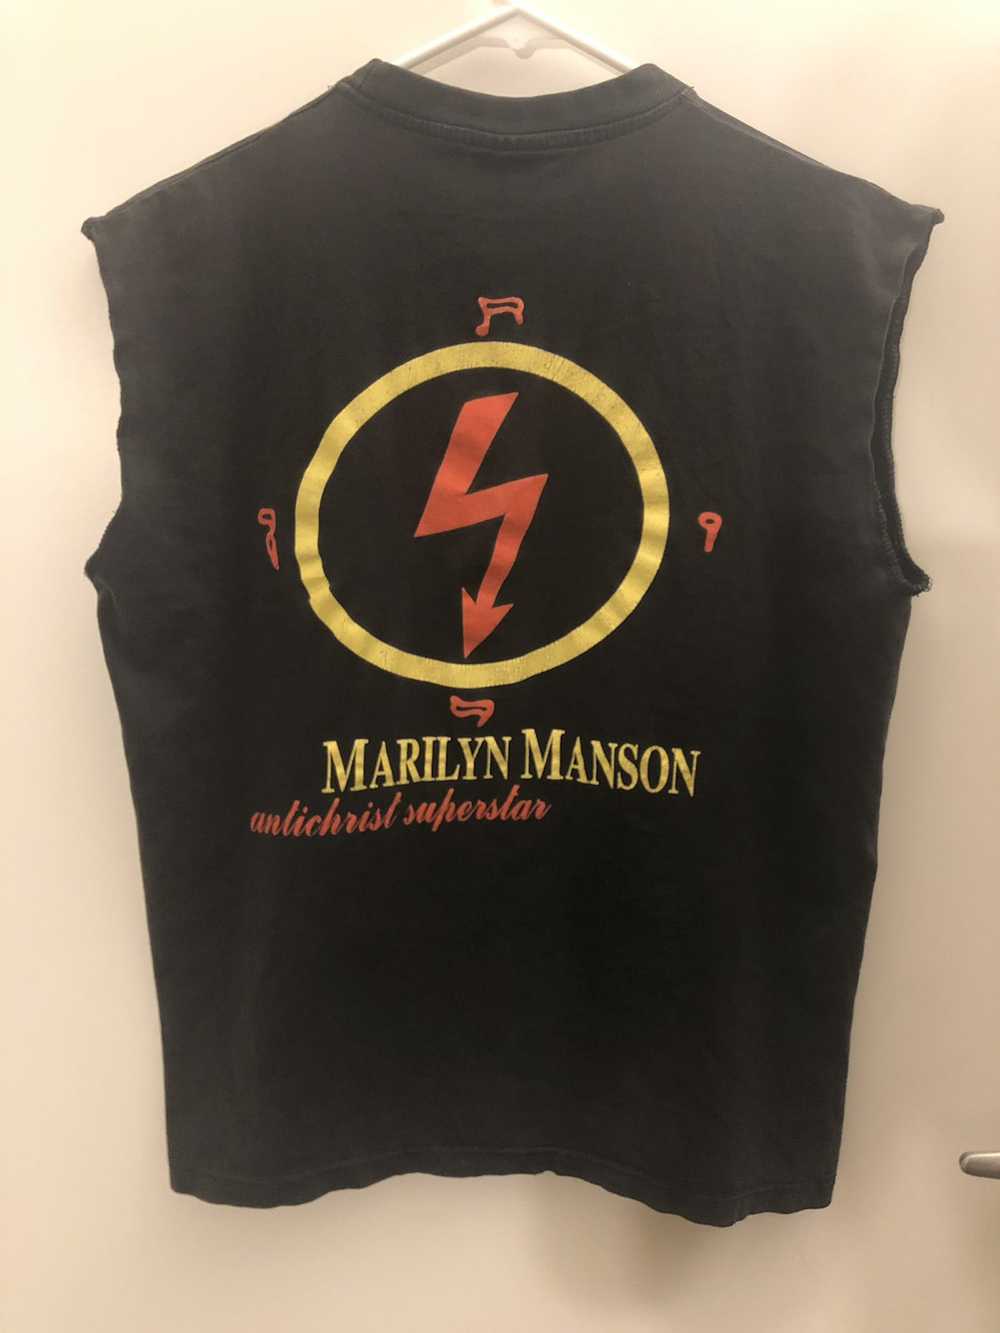 Marilyn Manson × Vintage Marilyn Manson vintage s… - image 2